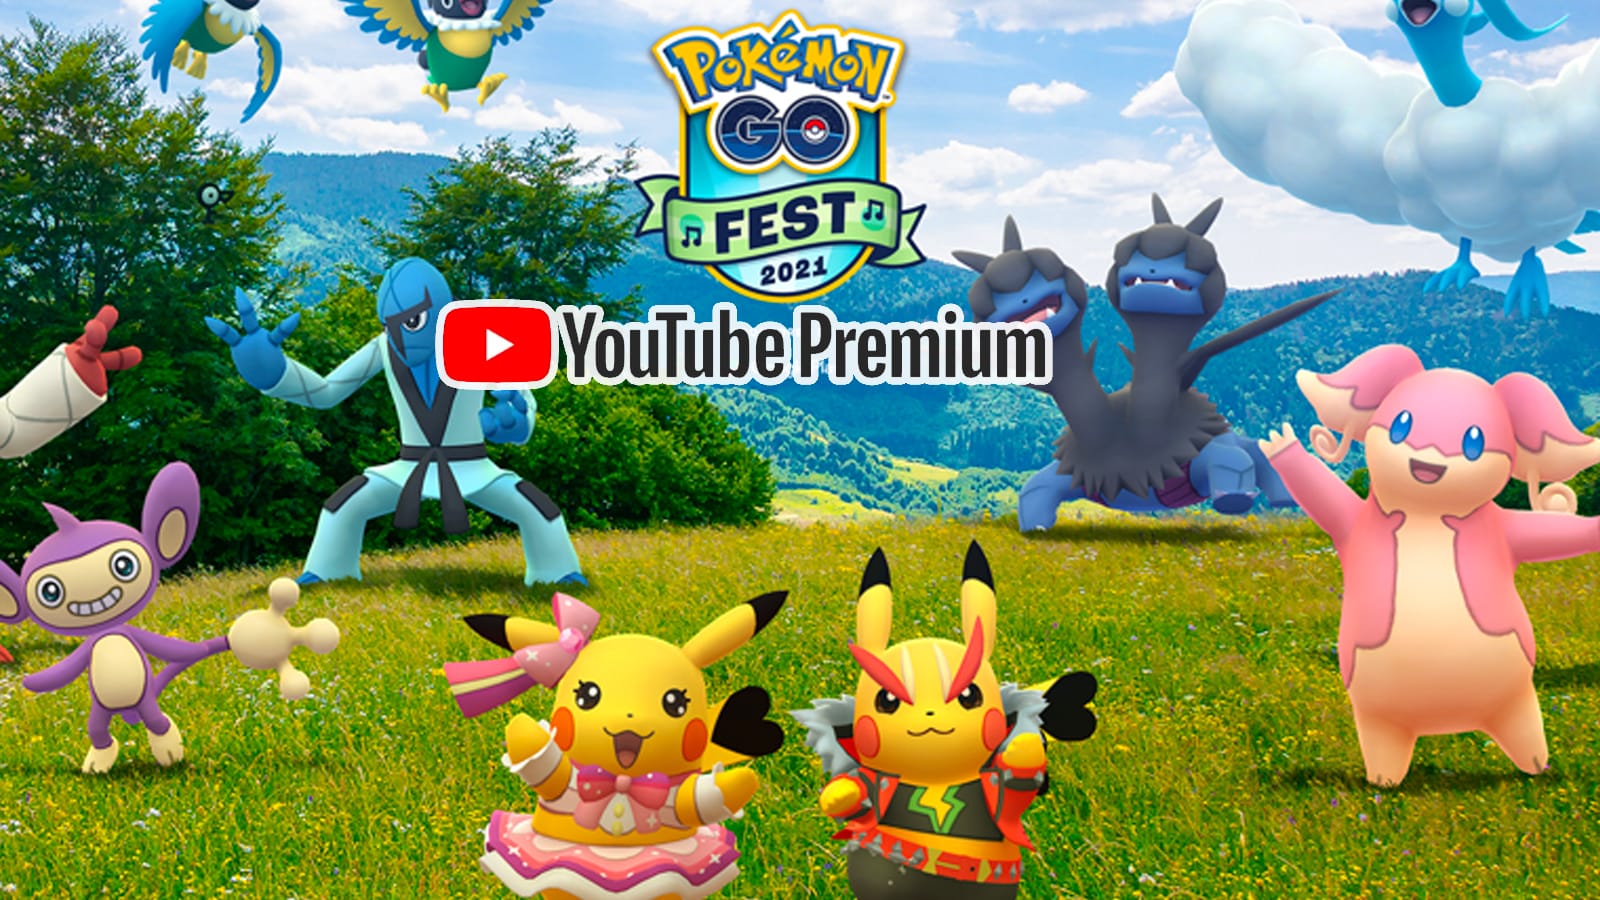 Pokemon Go Fest How to get free YouTube Premium 3 month reward Dexerto